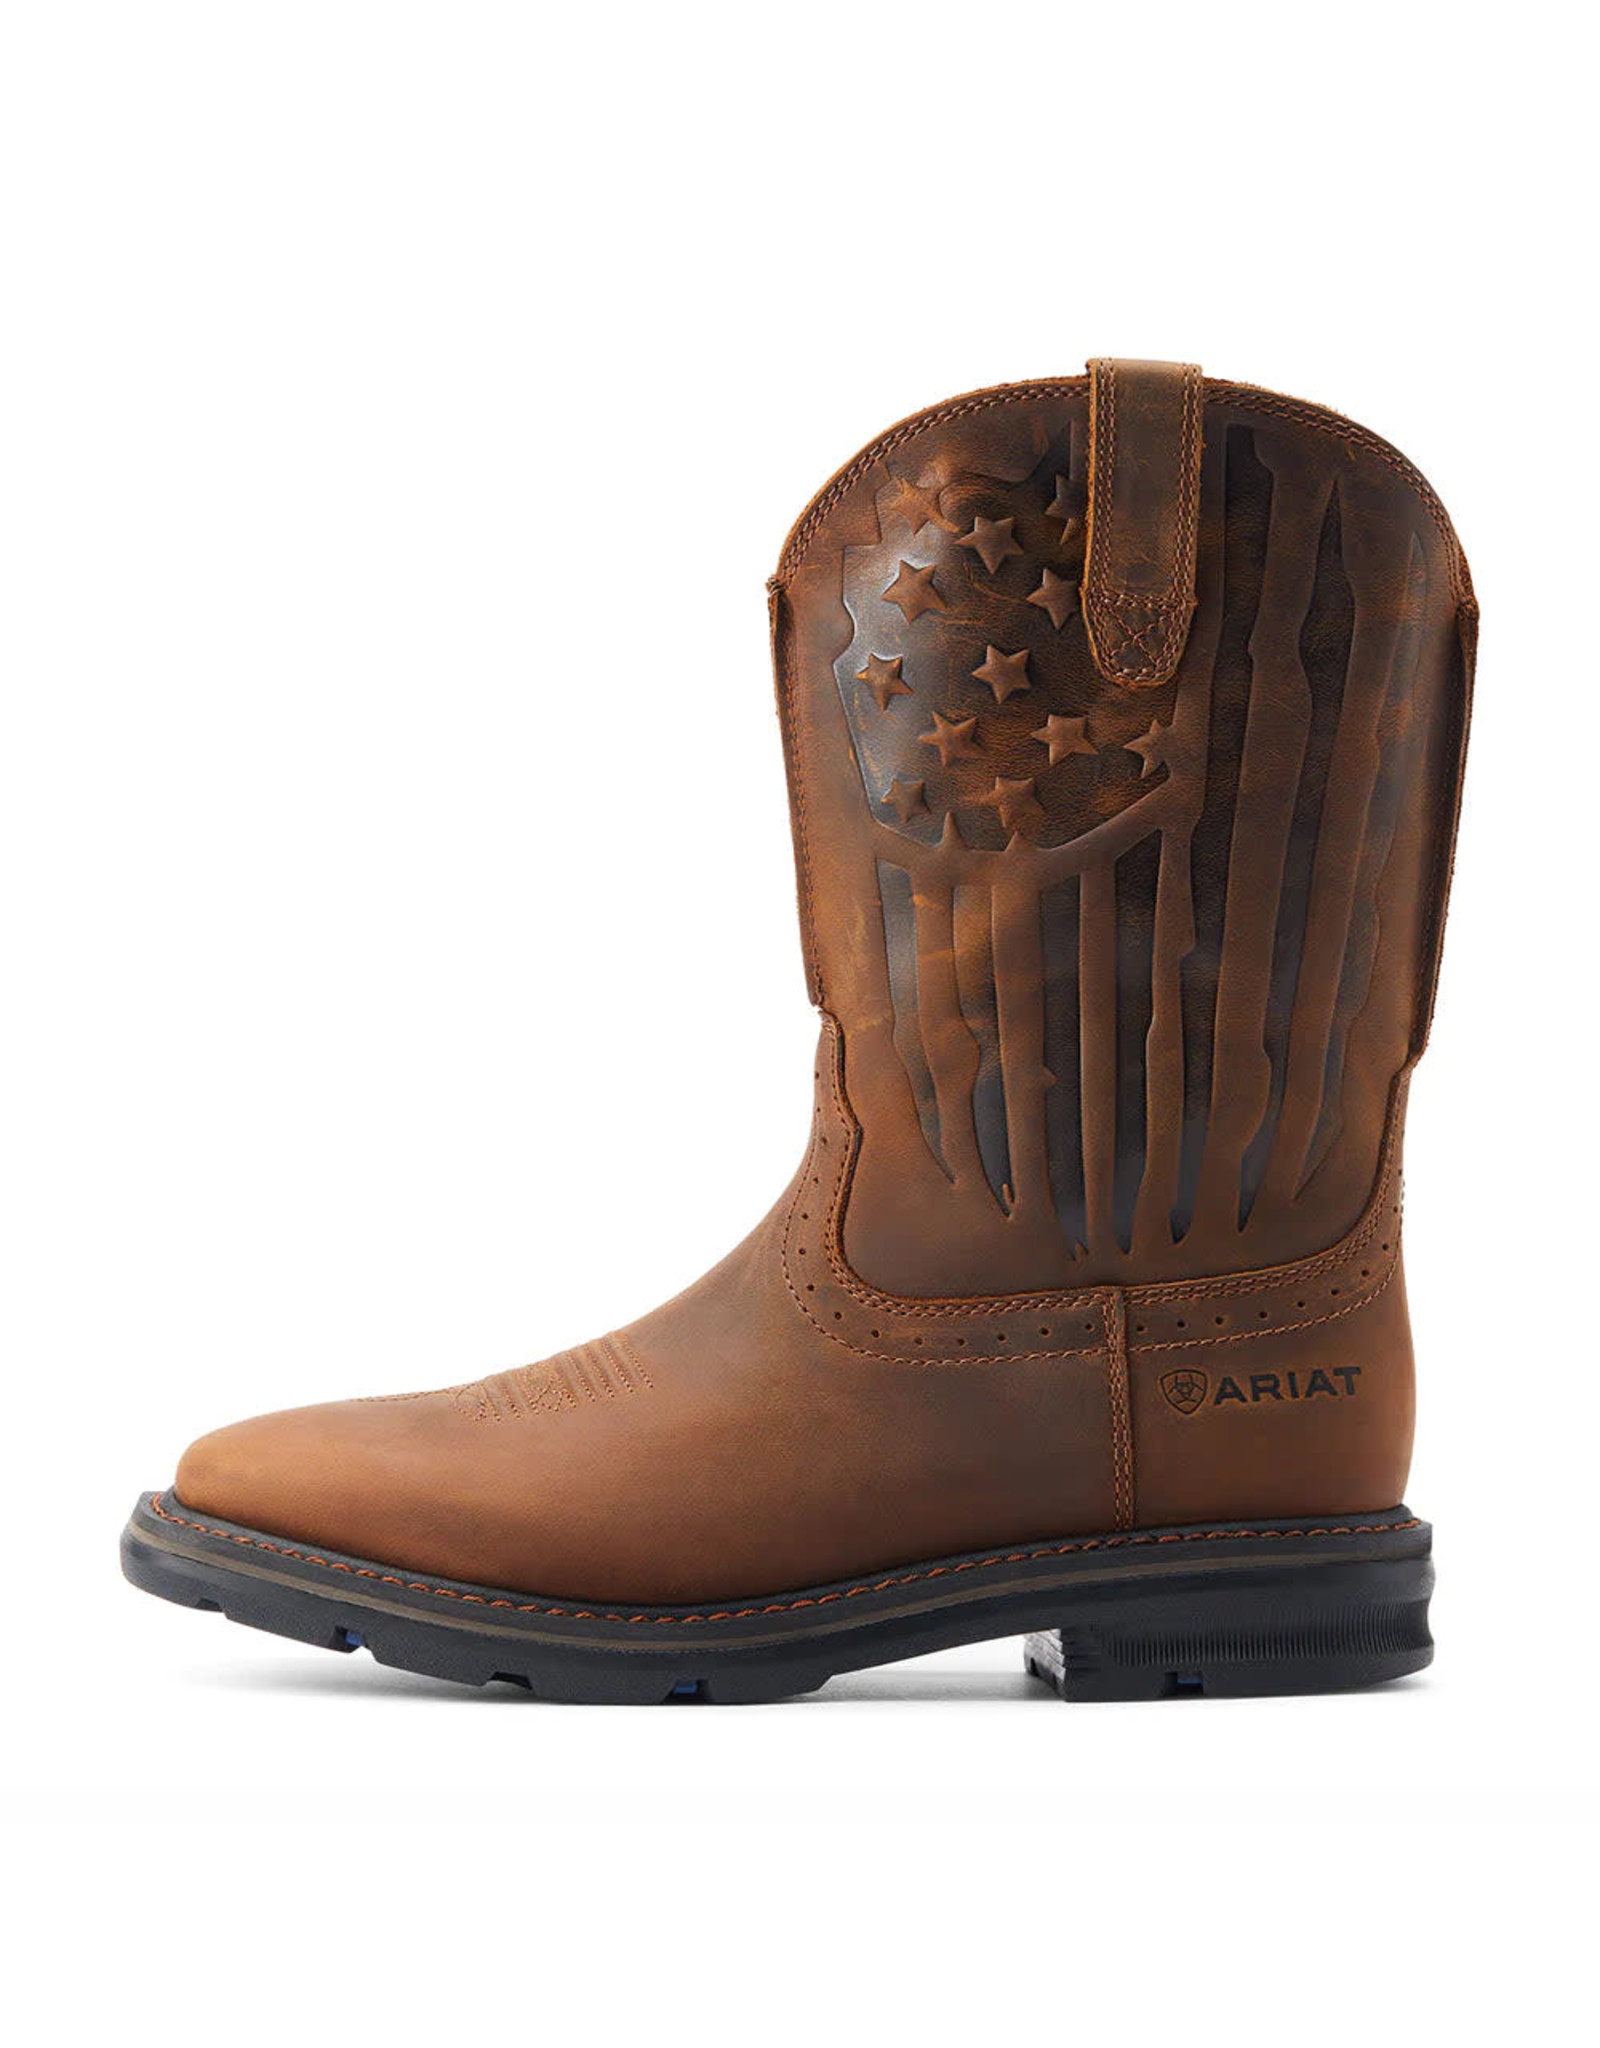 Ariat Ariat Men's Sierra Shock Shield Patriot Brown 10044505 Soft Toe Work Boots